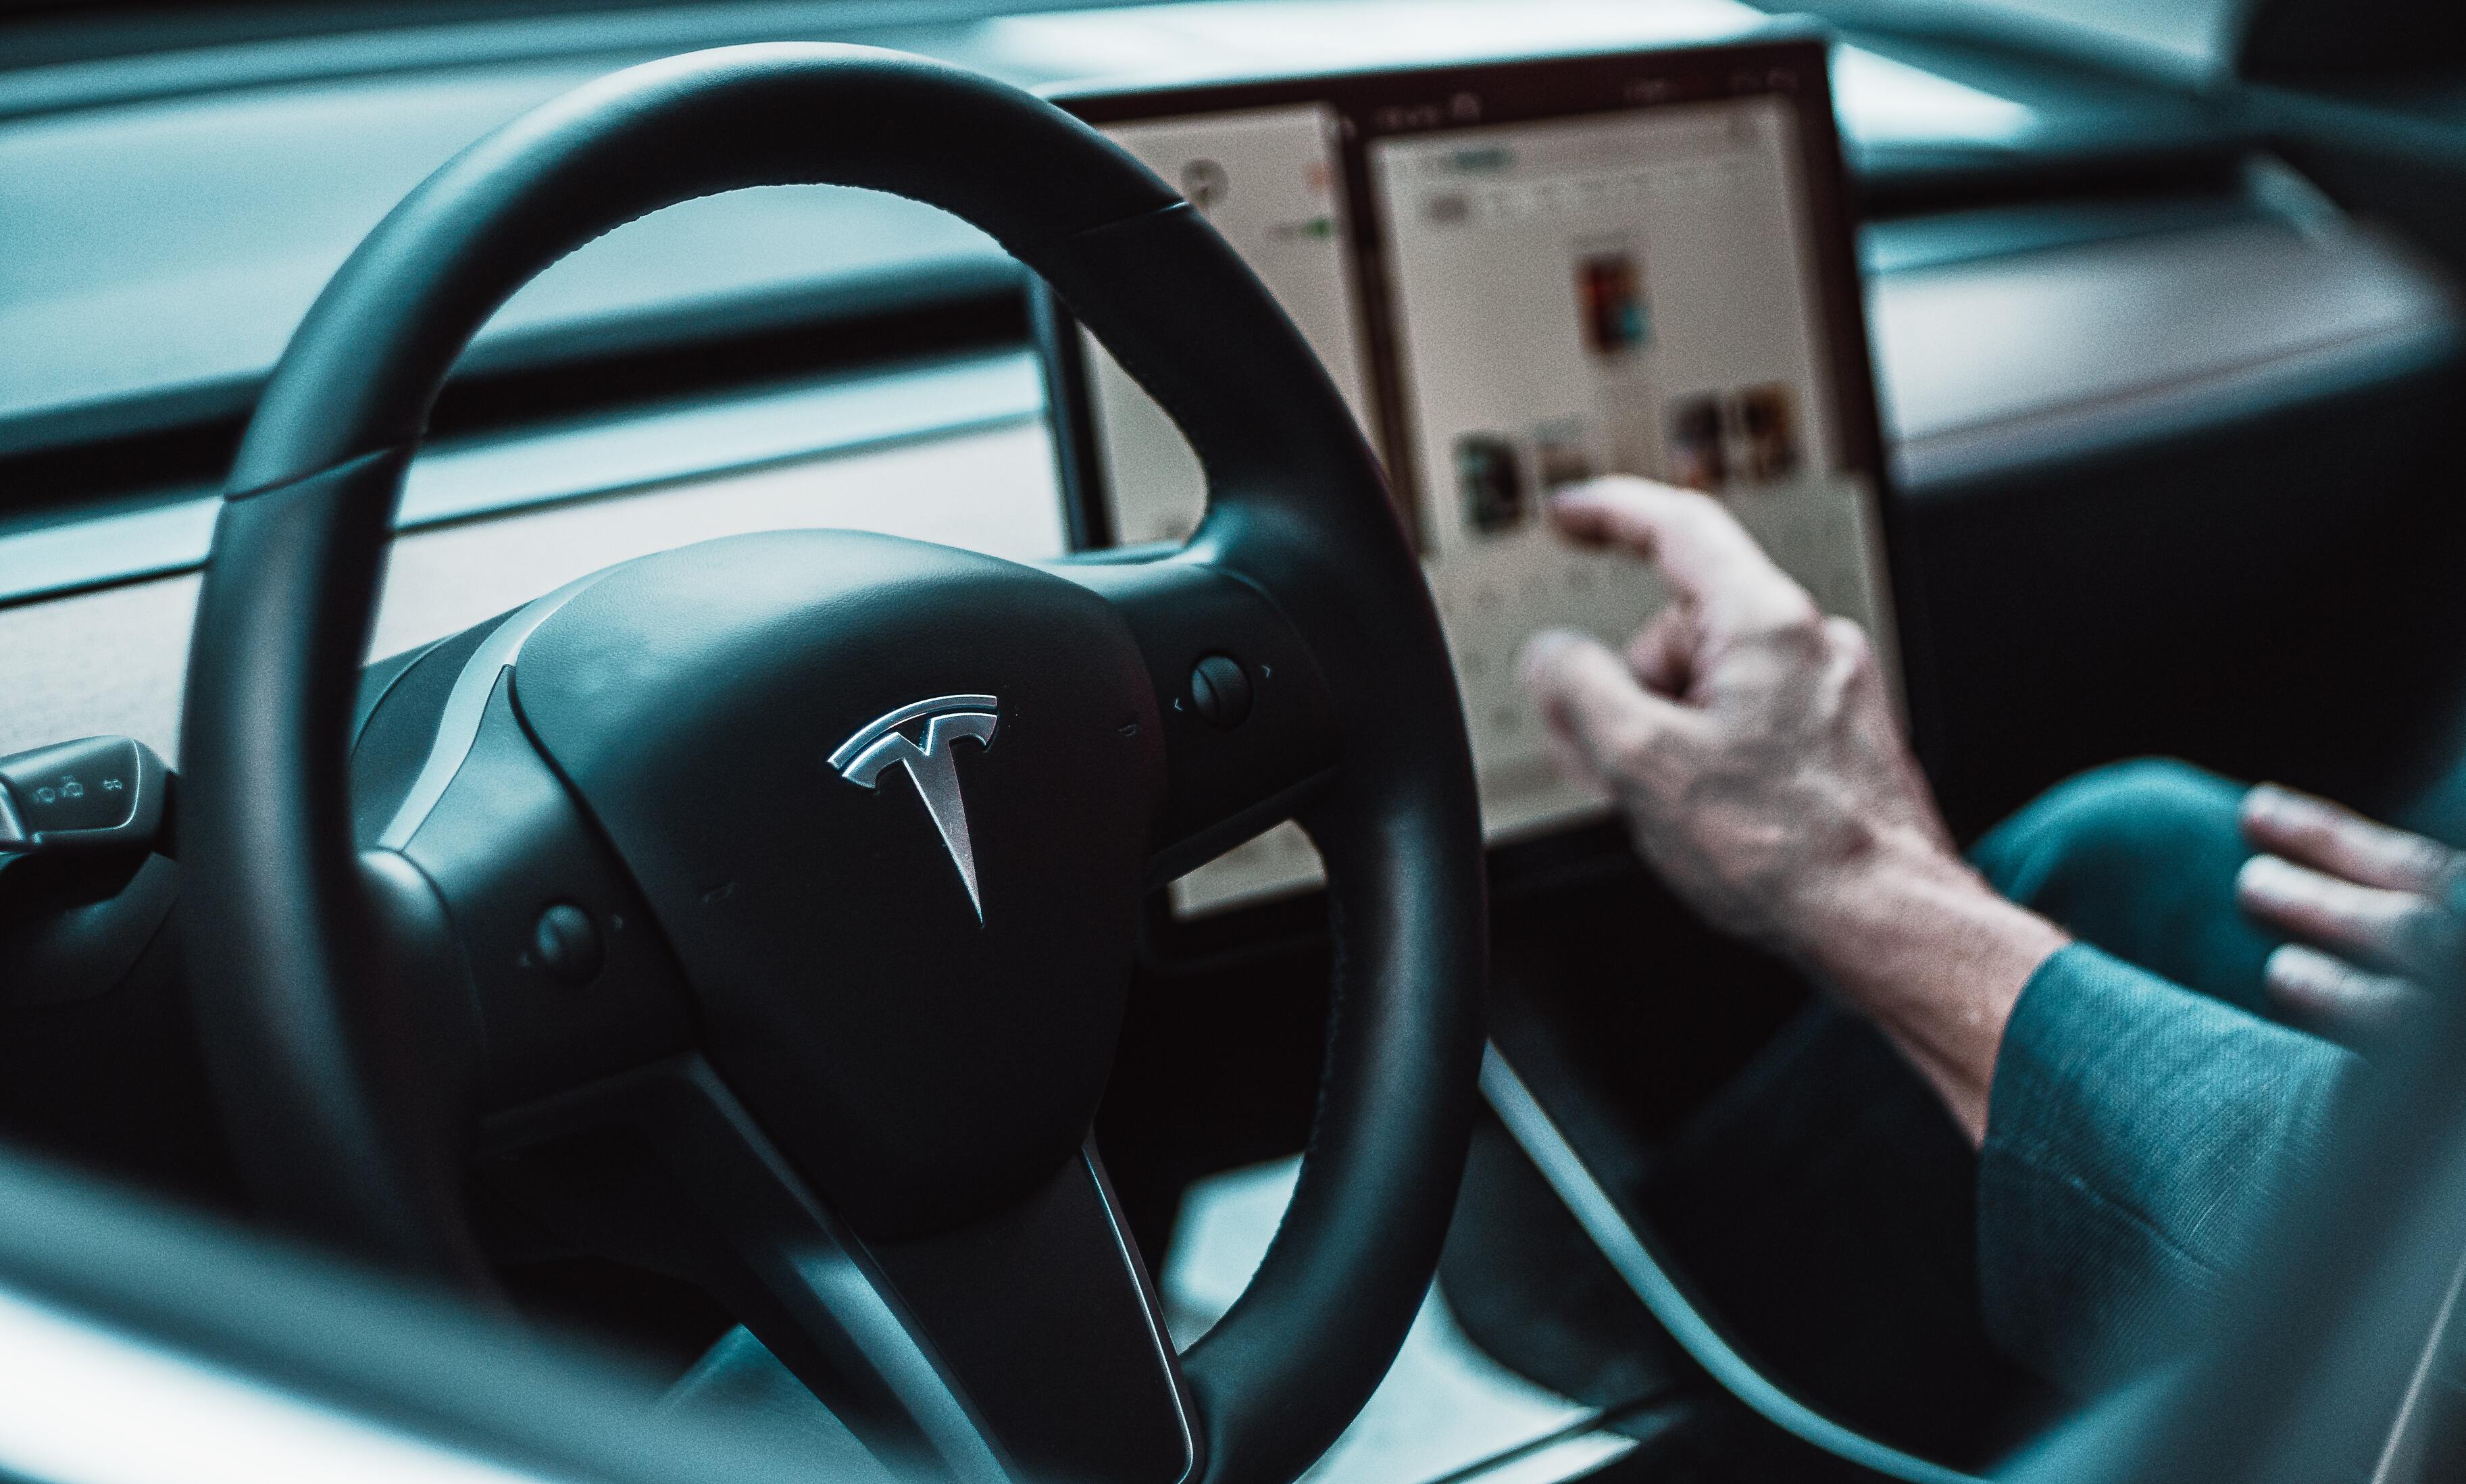 Tesla обвинили во лжи о возможностях автопилота электромобилей